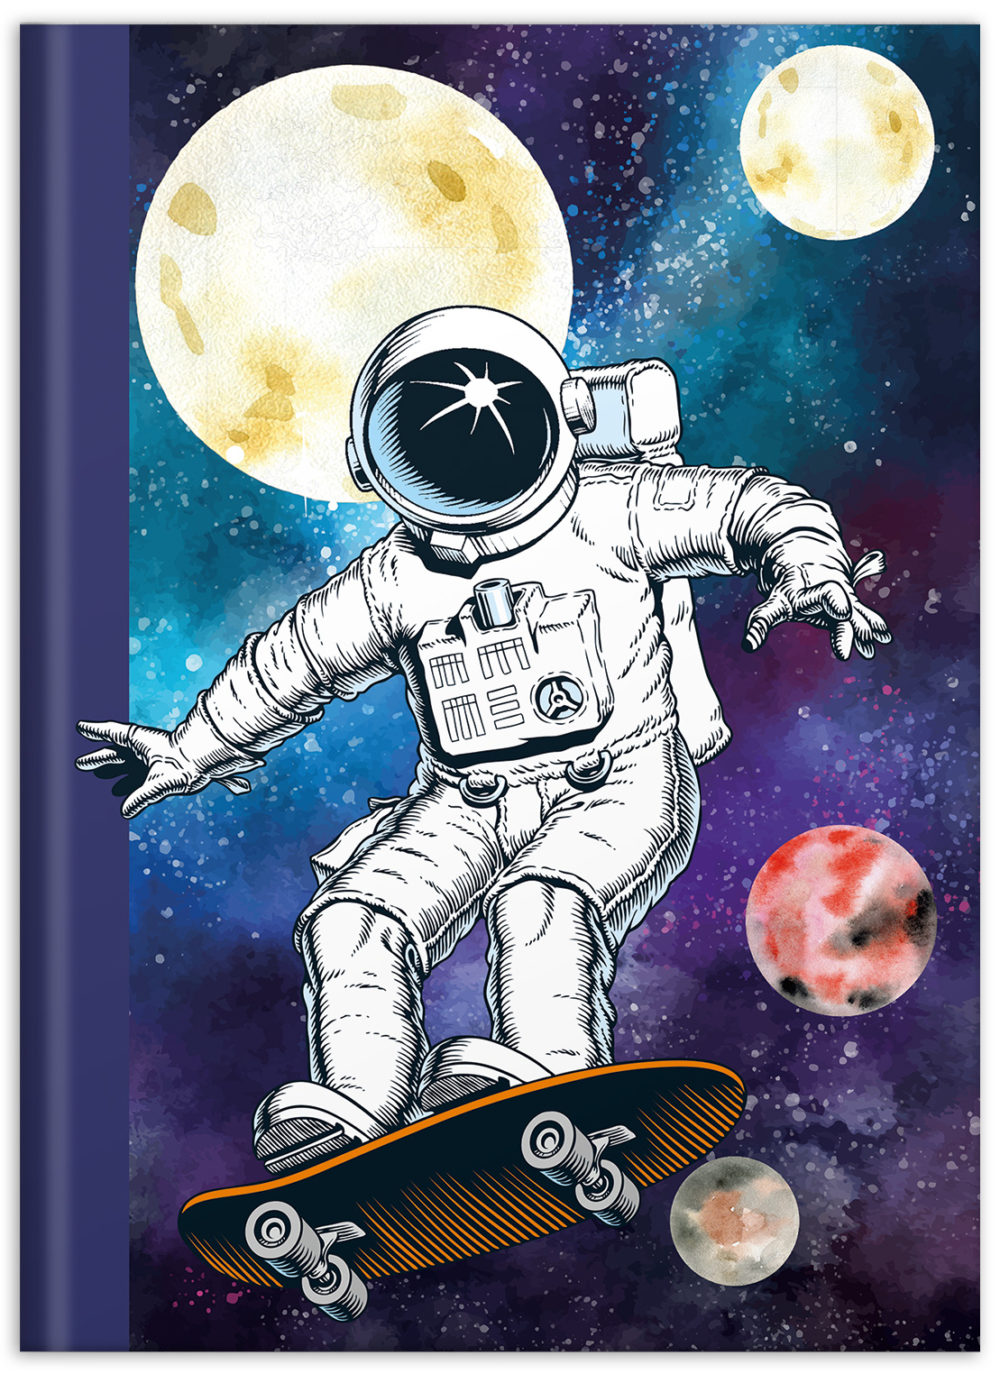 Notizbuch "Skatonaut" mit einem Astronauten auf einem Skateboard im Weltall